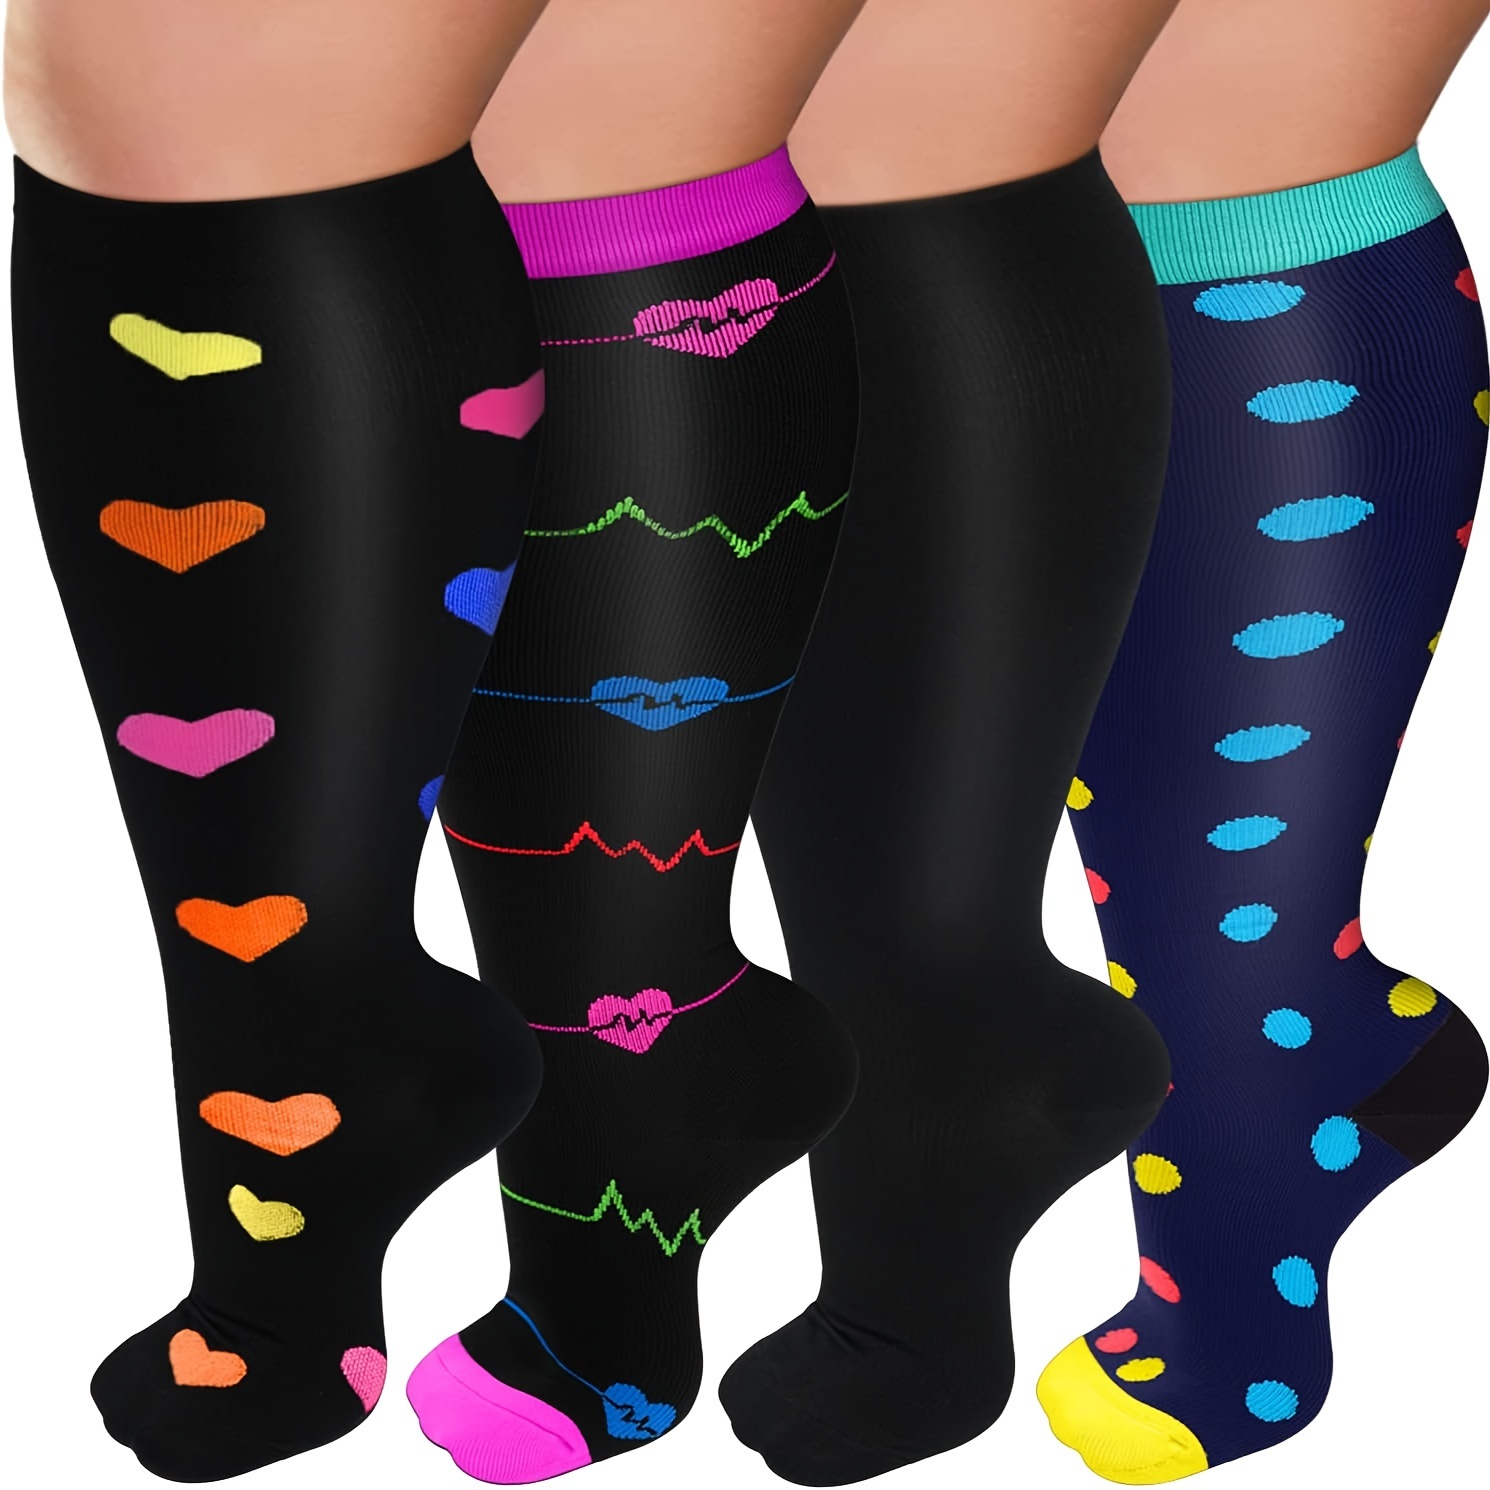  Nurse Compression Socks For Women Calf Compression